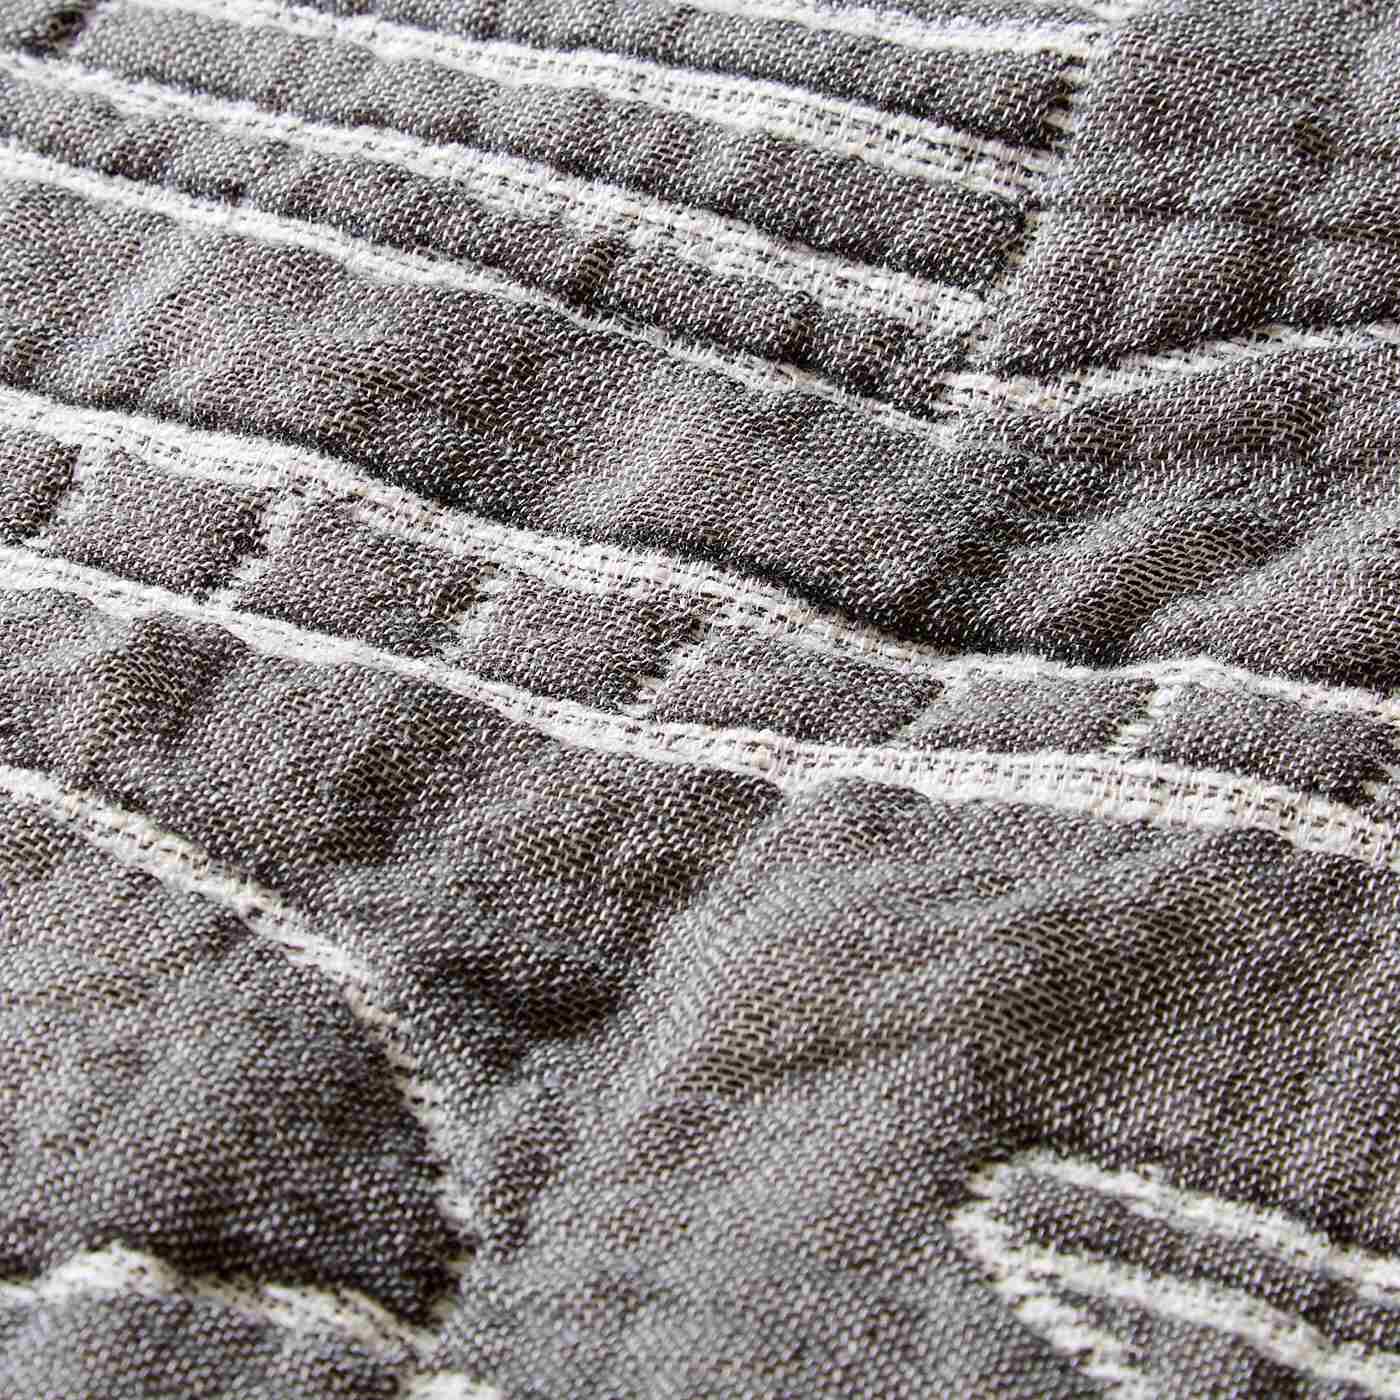 SAANA JA OLLI|サーナ ヤ オッリ　6重ガーゼに織り上げたふんわりコットンガーゼケット〈ハウス オブ ドリーミング〉|三河木綿という愛知県で有名なしっかり厚みのある織物。職人さんが作っています。